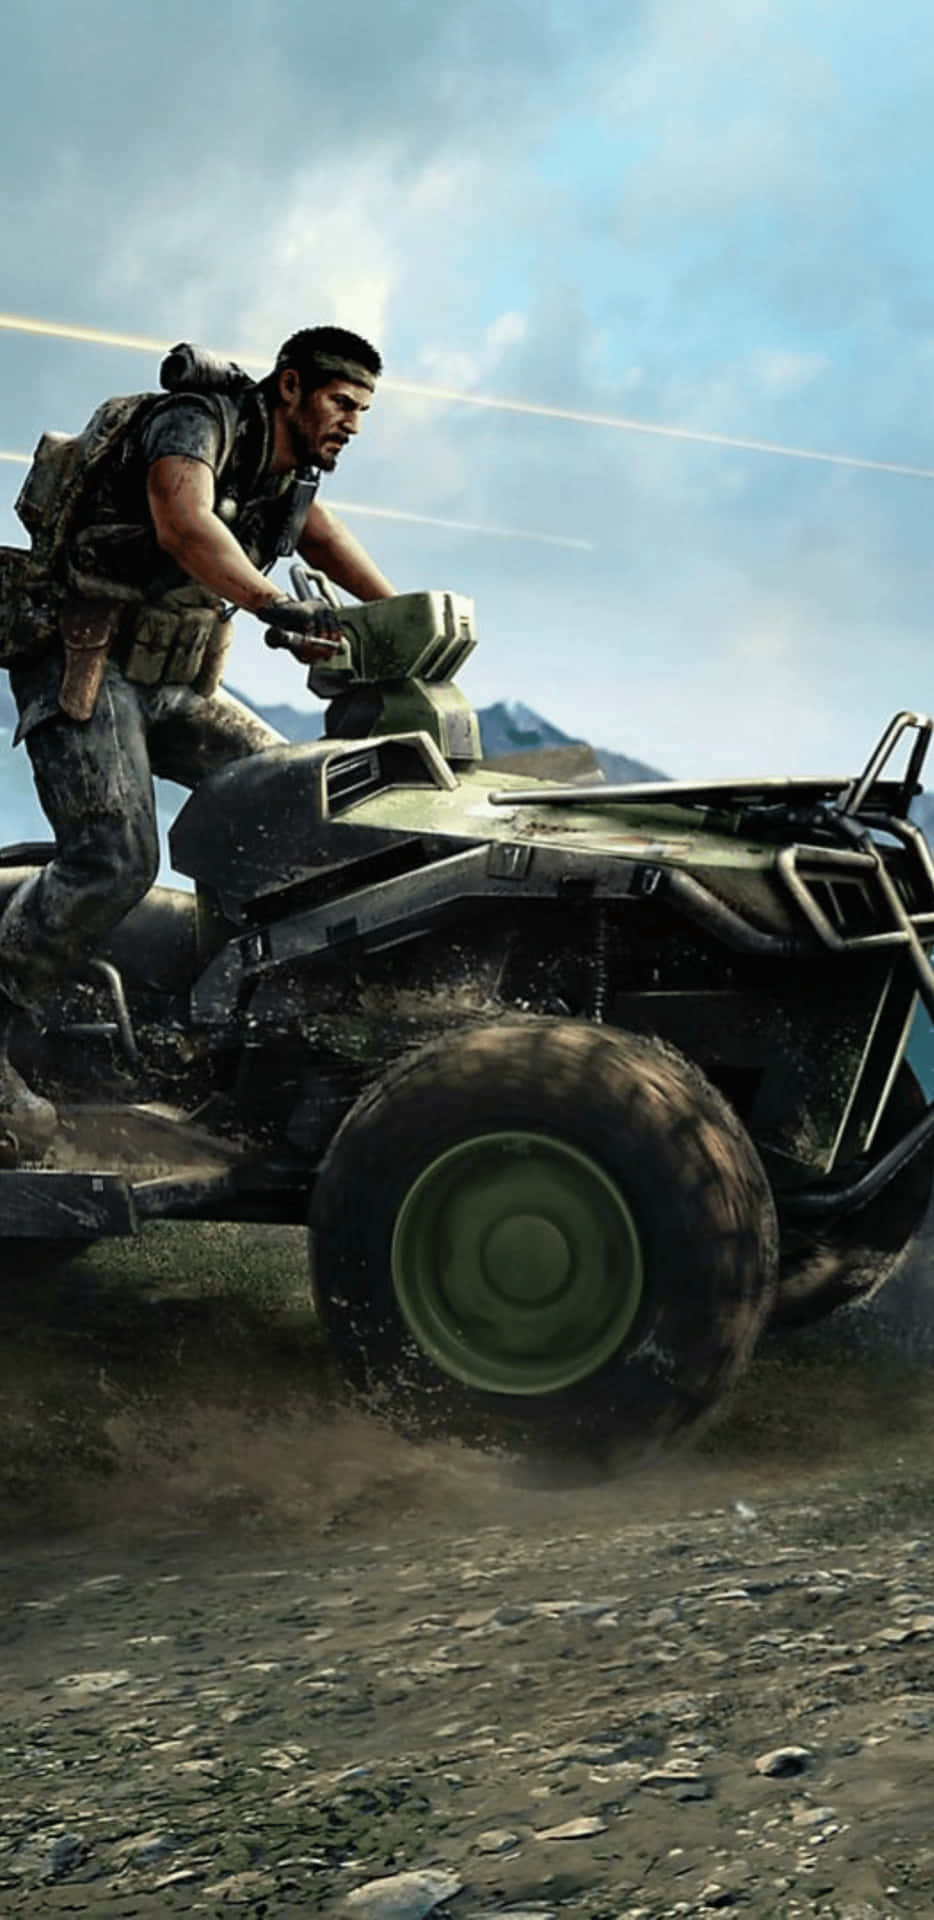 Sumérgeteen La Emocionante Acción De Call Of Duty: Black Ops 4 Con El Pixel 3xl.